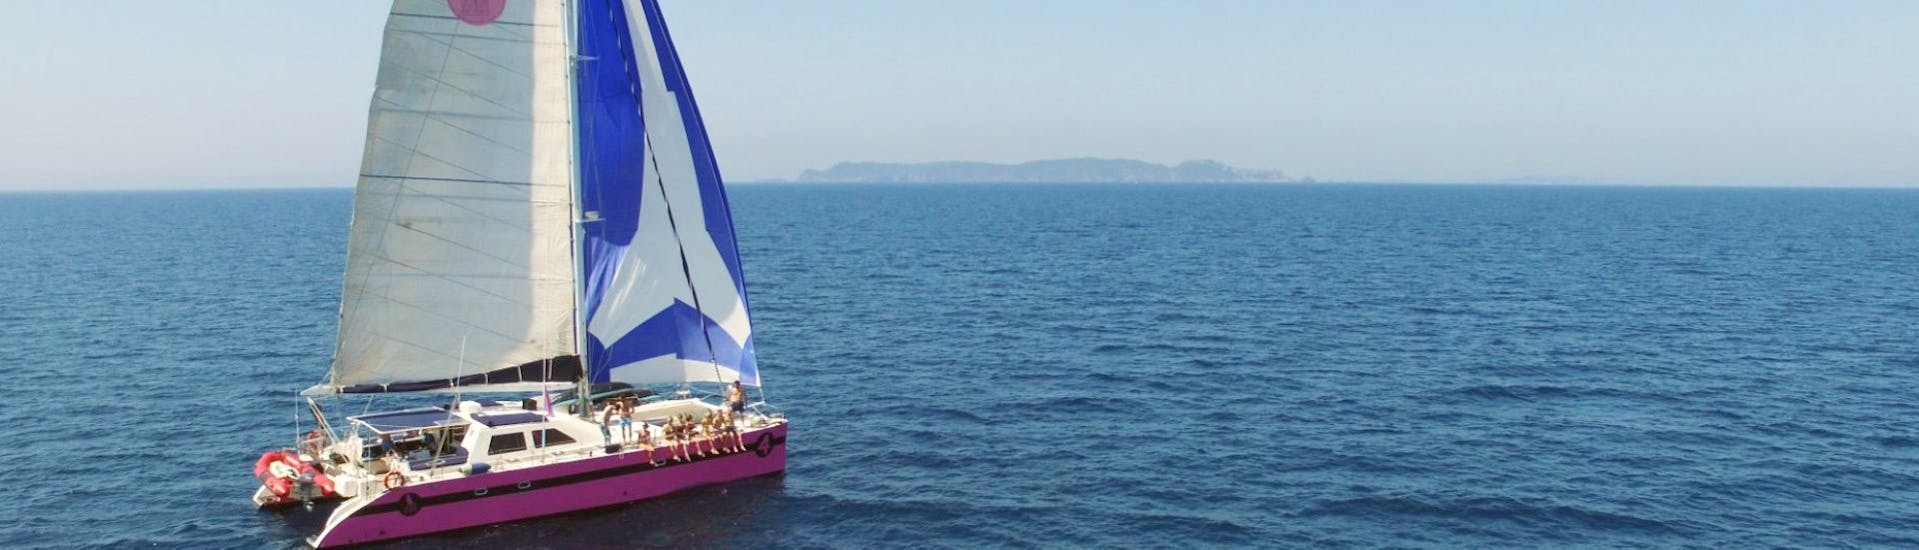 Sicht von der Bootstour aus im Golf von Morbihan mit Caseneuve  Maxi Katamaran.